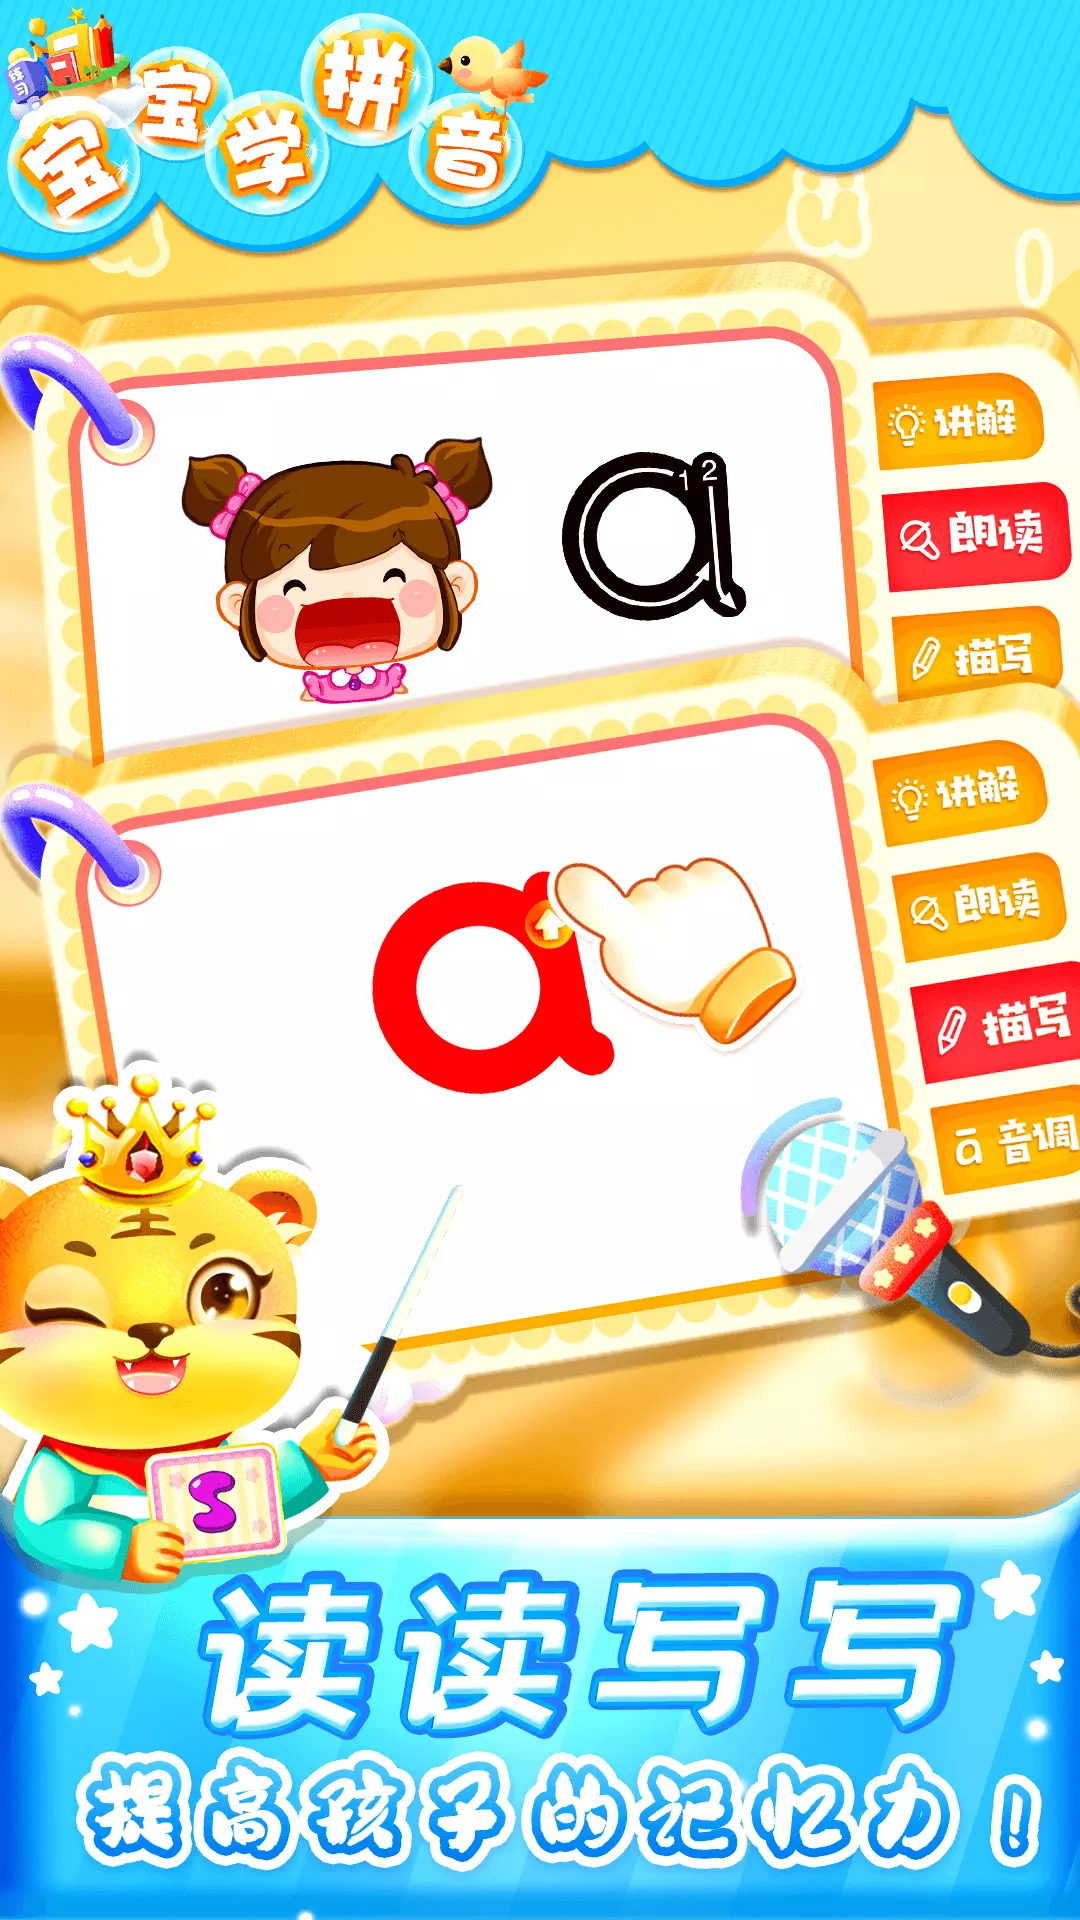 儿童学汉语拼音-幼升小 v7.5-汉语拼音早教启蒙轻松学拼音字母截图2